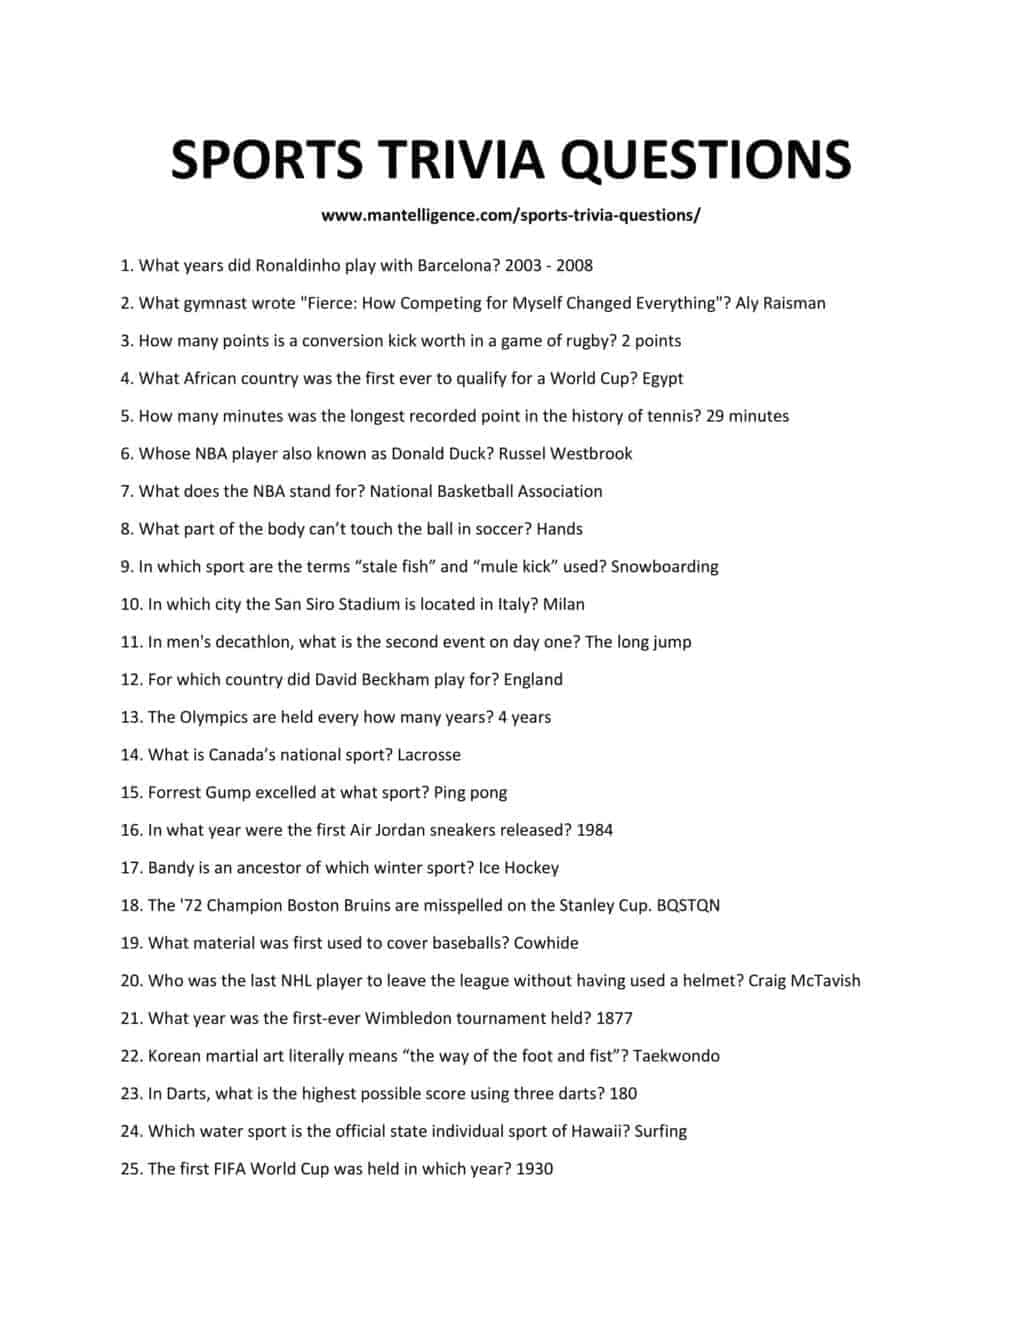 Sport Trivia Questions